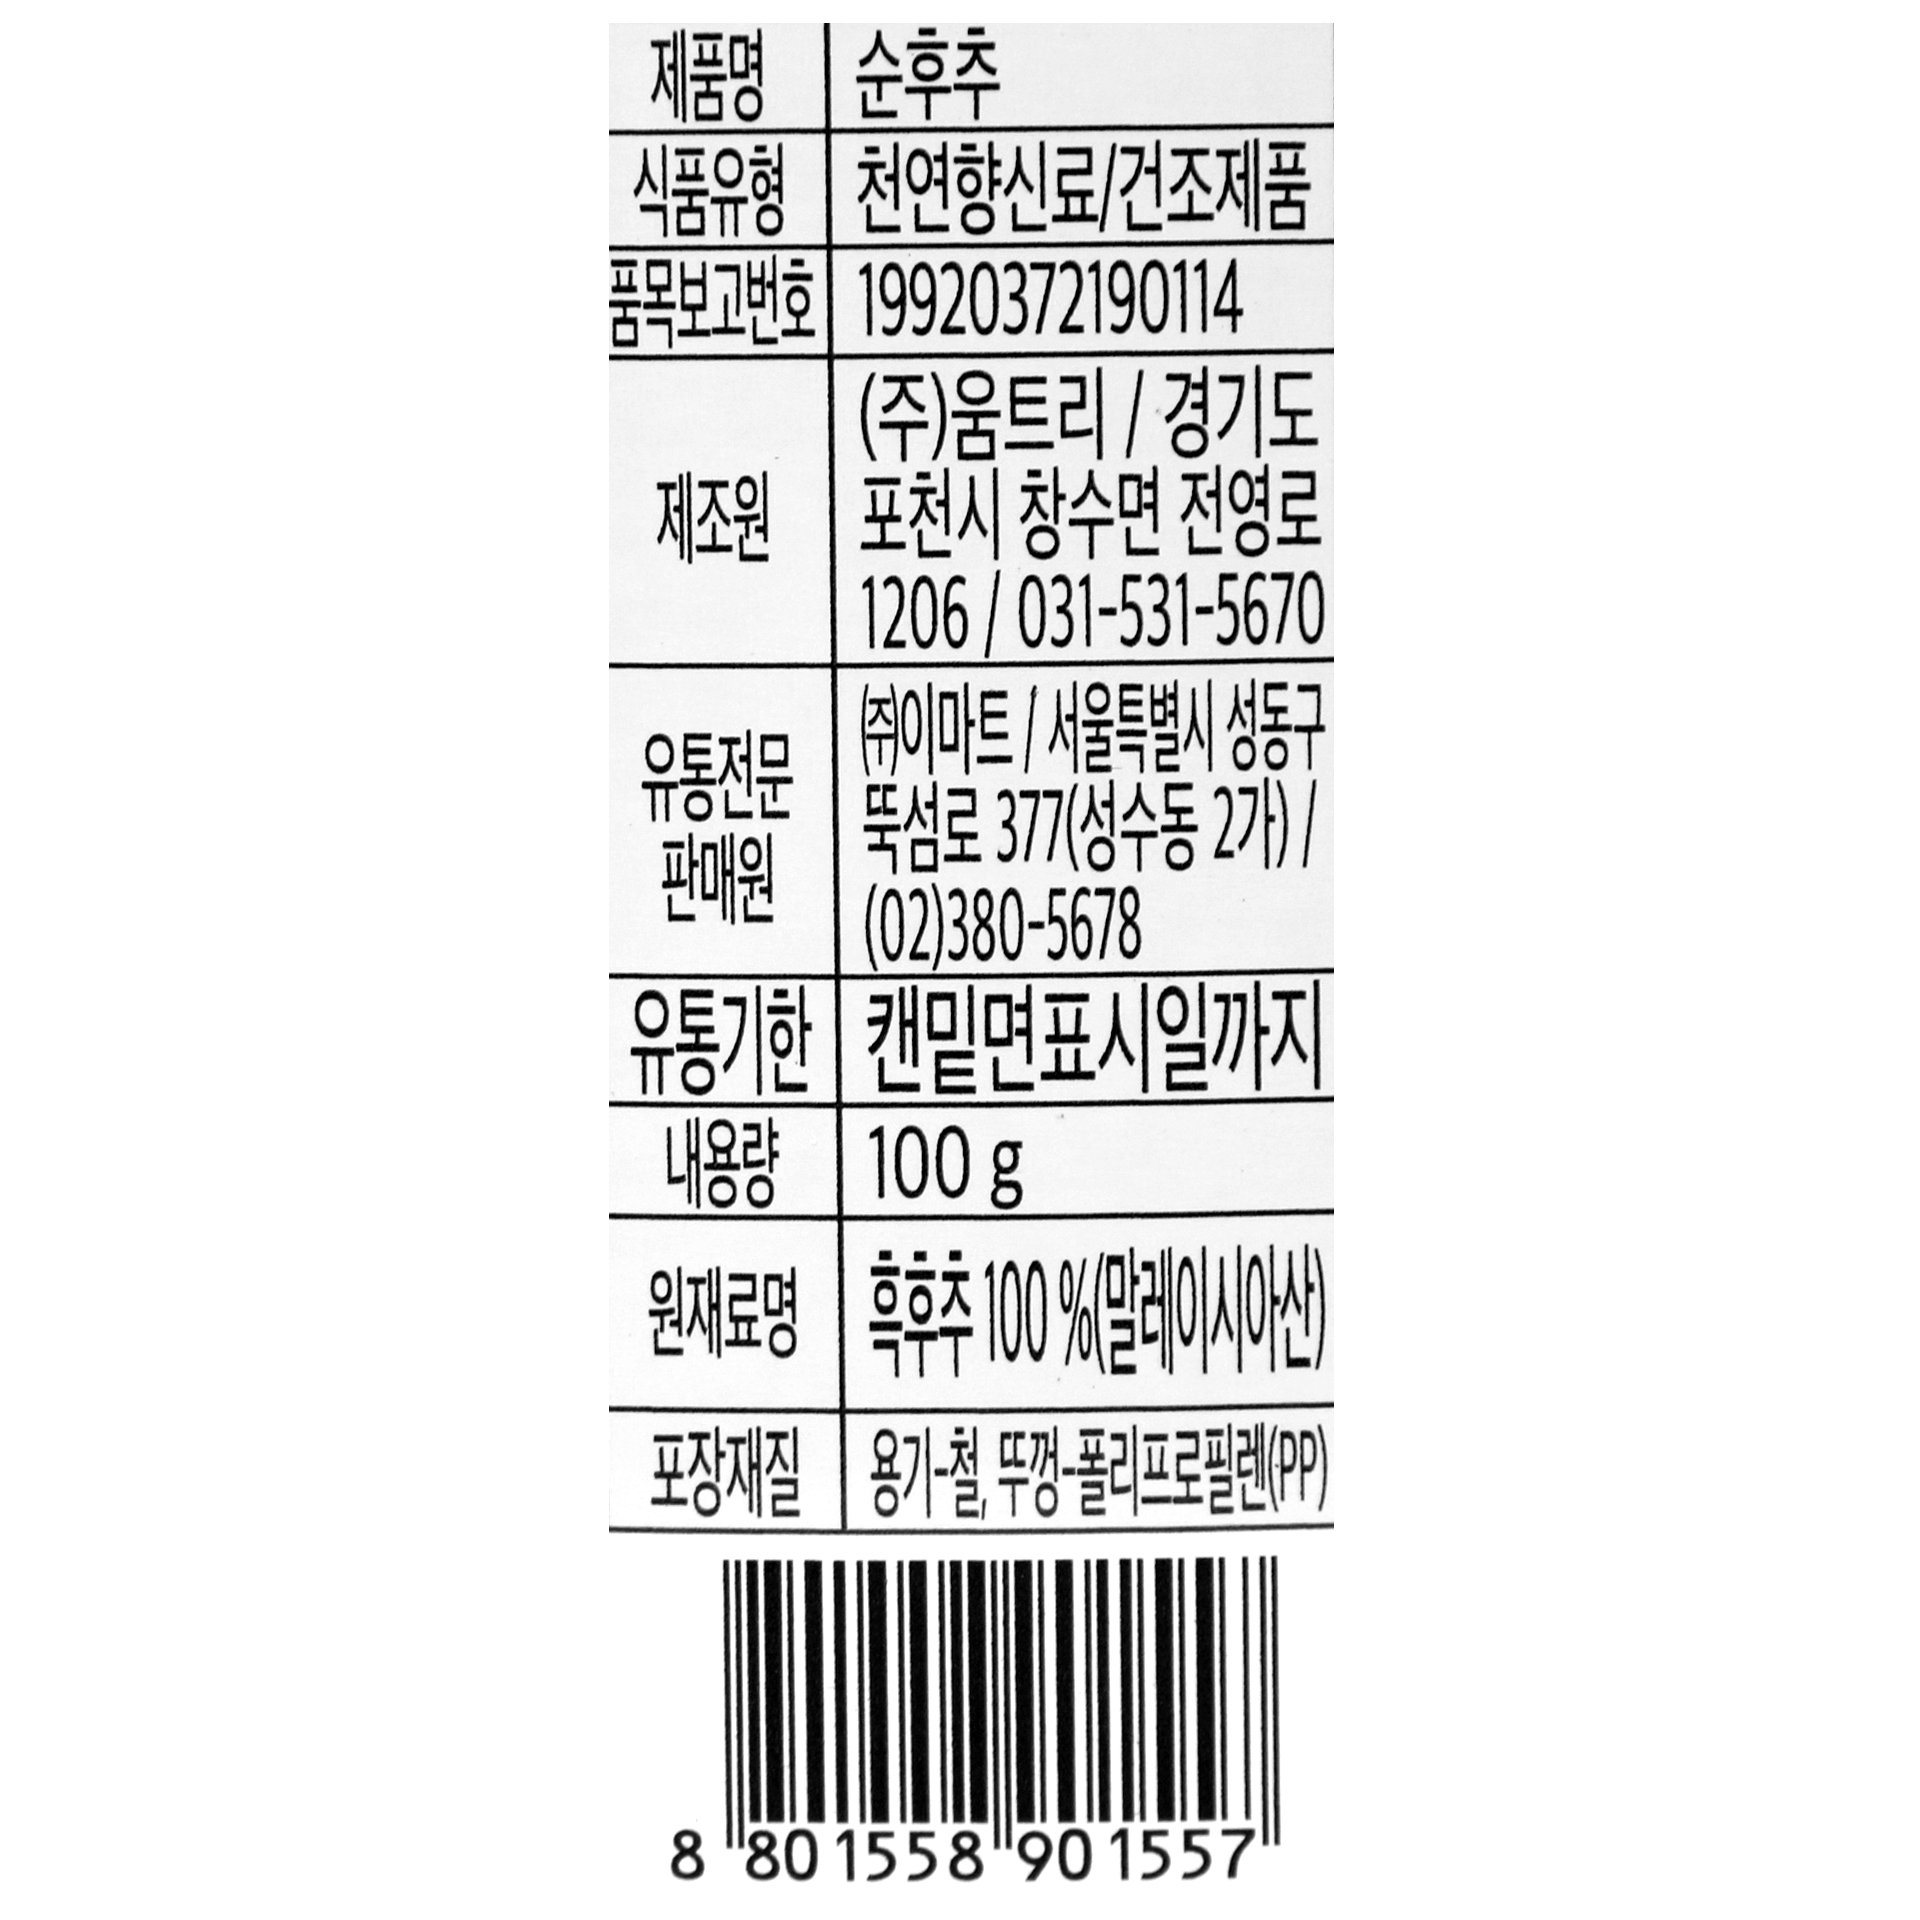 韓國食品-[피코크 Peacock] 천연순후추 100g